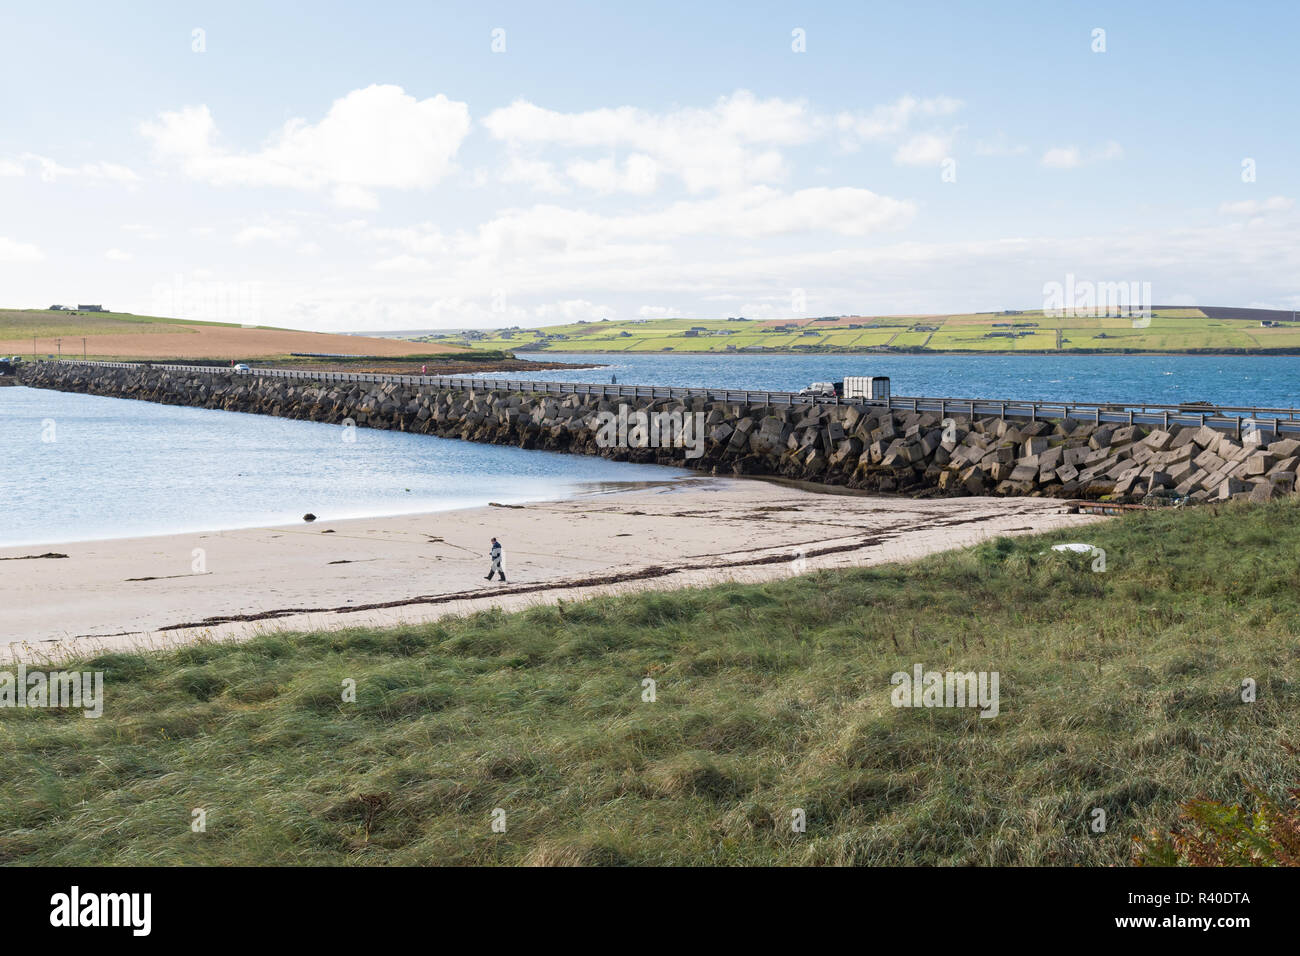 Uomo a camminare sulla spiaggia accanto alla barriera di Churchill n. 3 causeway, collegando le isole di Vi riportiamo Holm e Burray, , le Orcadi Scozia, Regno Unito Foto Stock